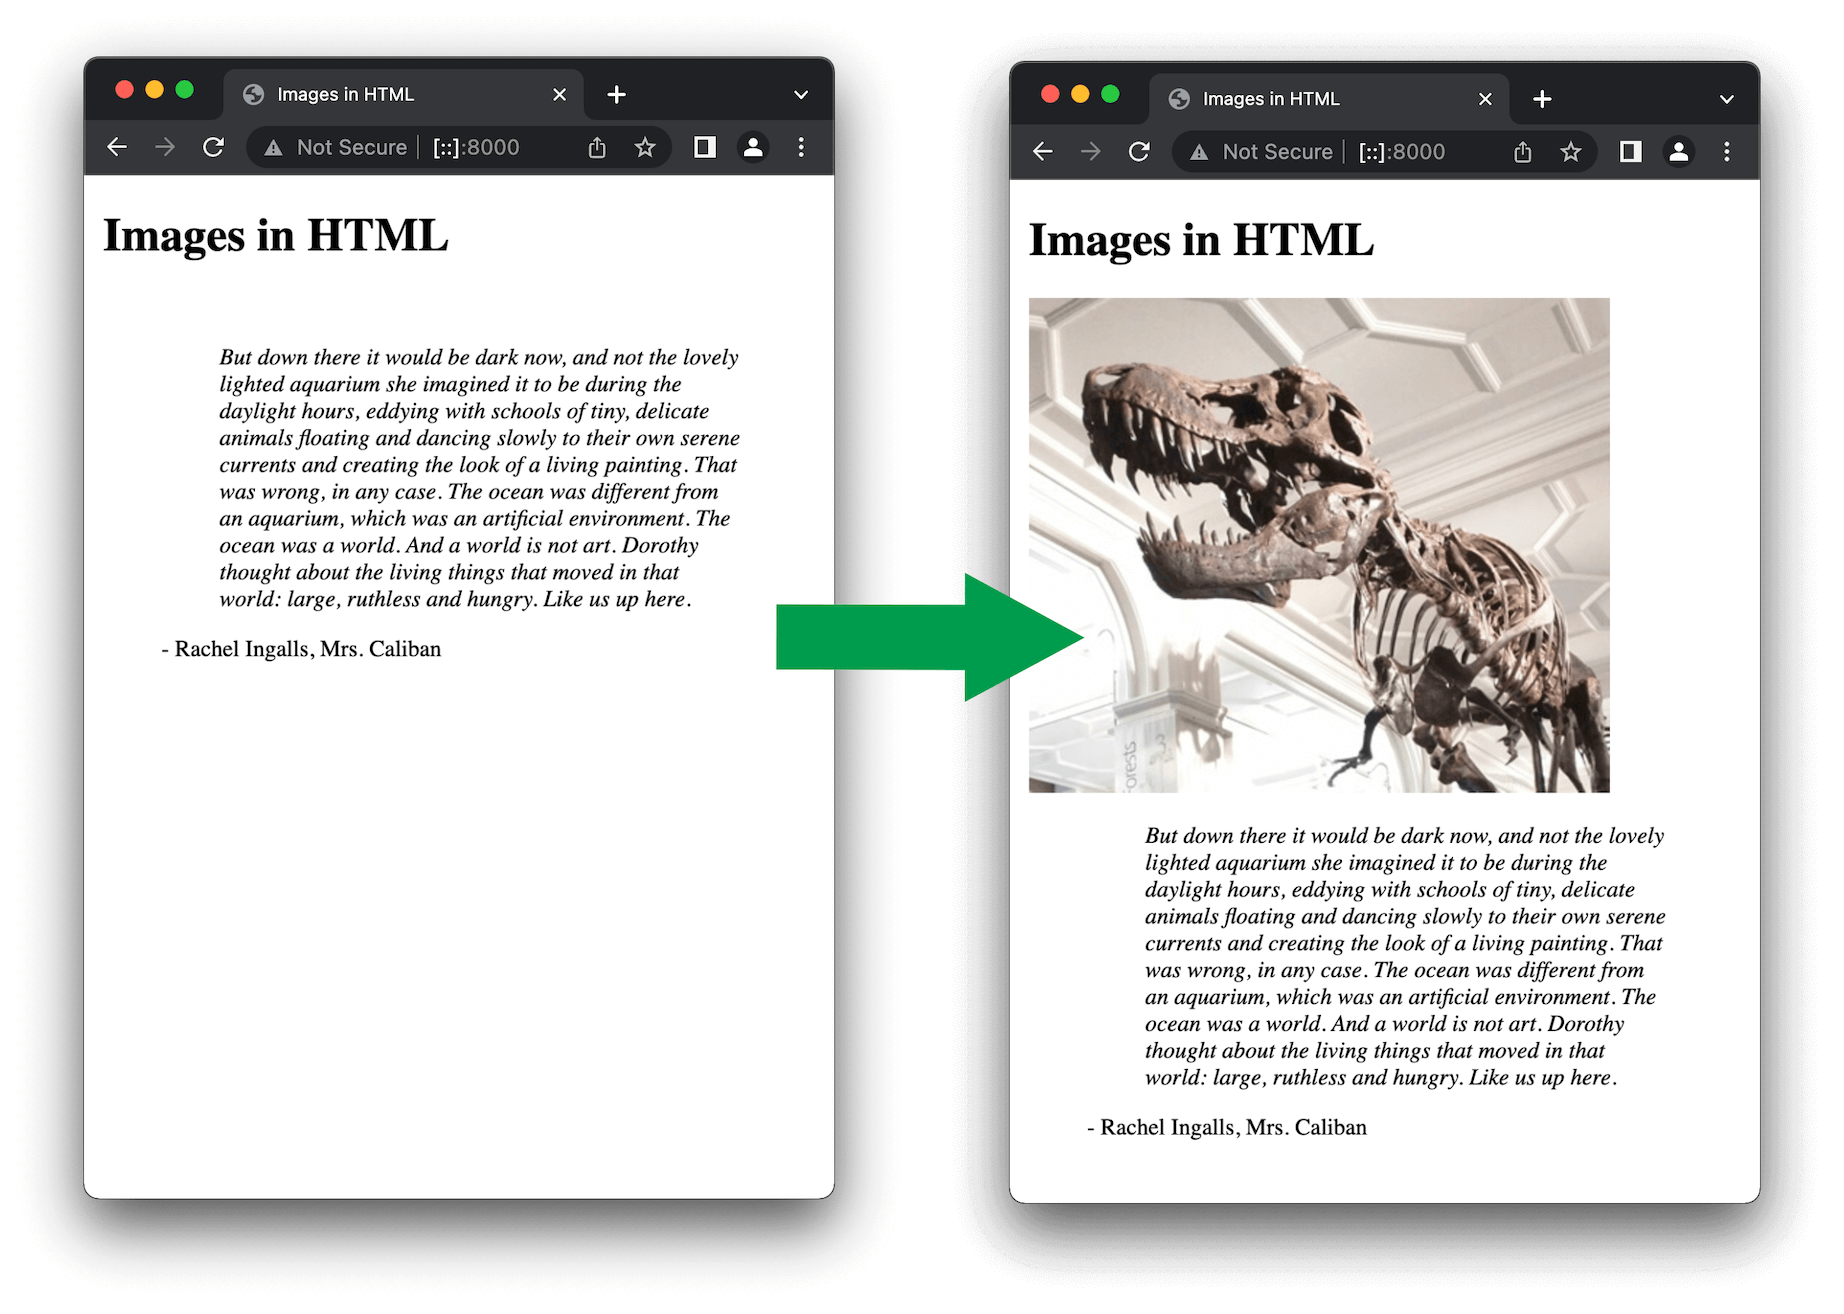 画像サイズを指定しない場合の、ブラウザーがページを読み込んでいるときと完了したときのページレイアウトの比較。